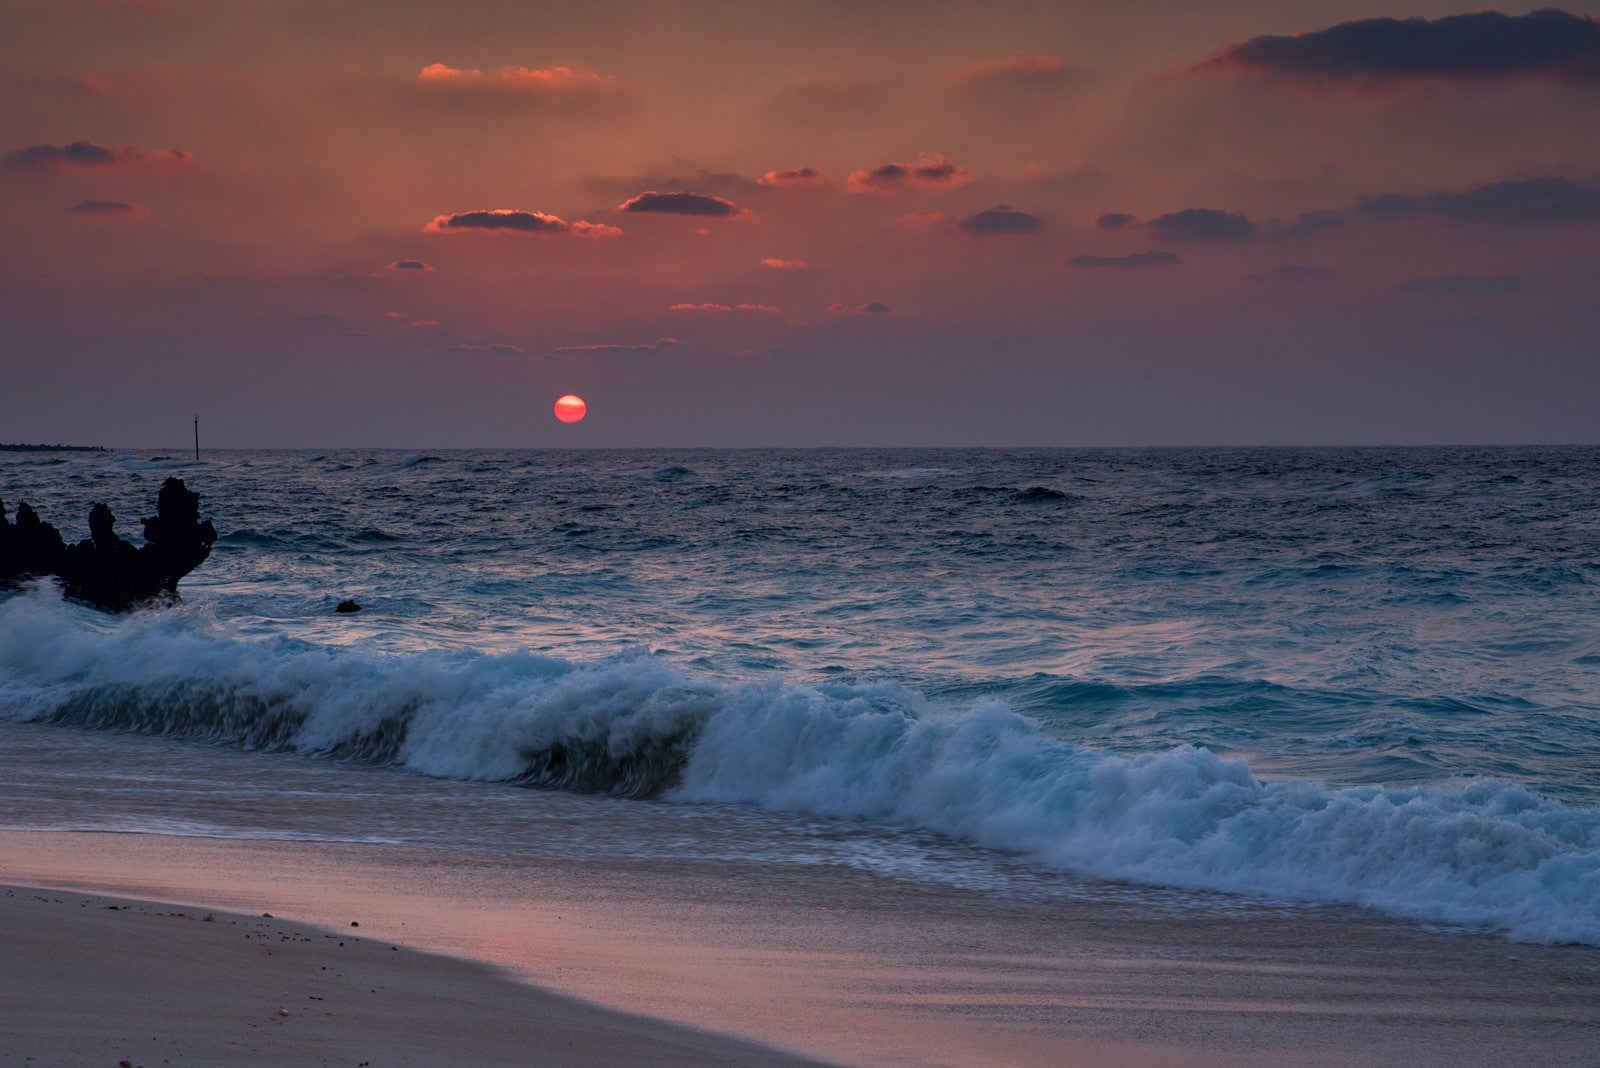 「夕焼けと与論島の海と砂浜」の写真